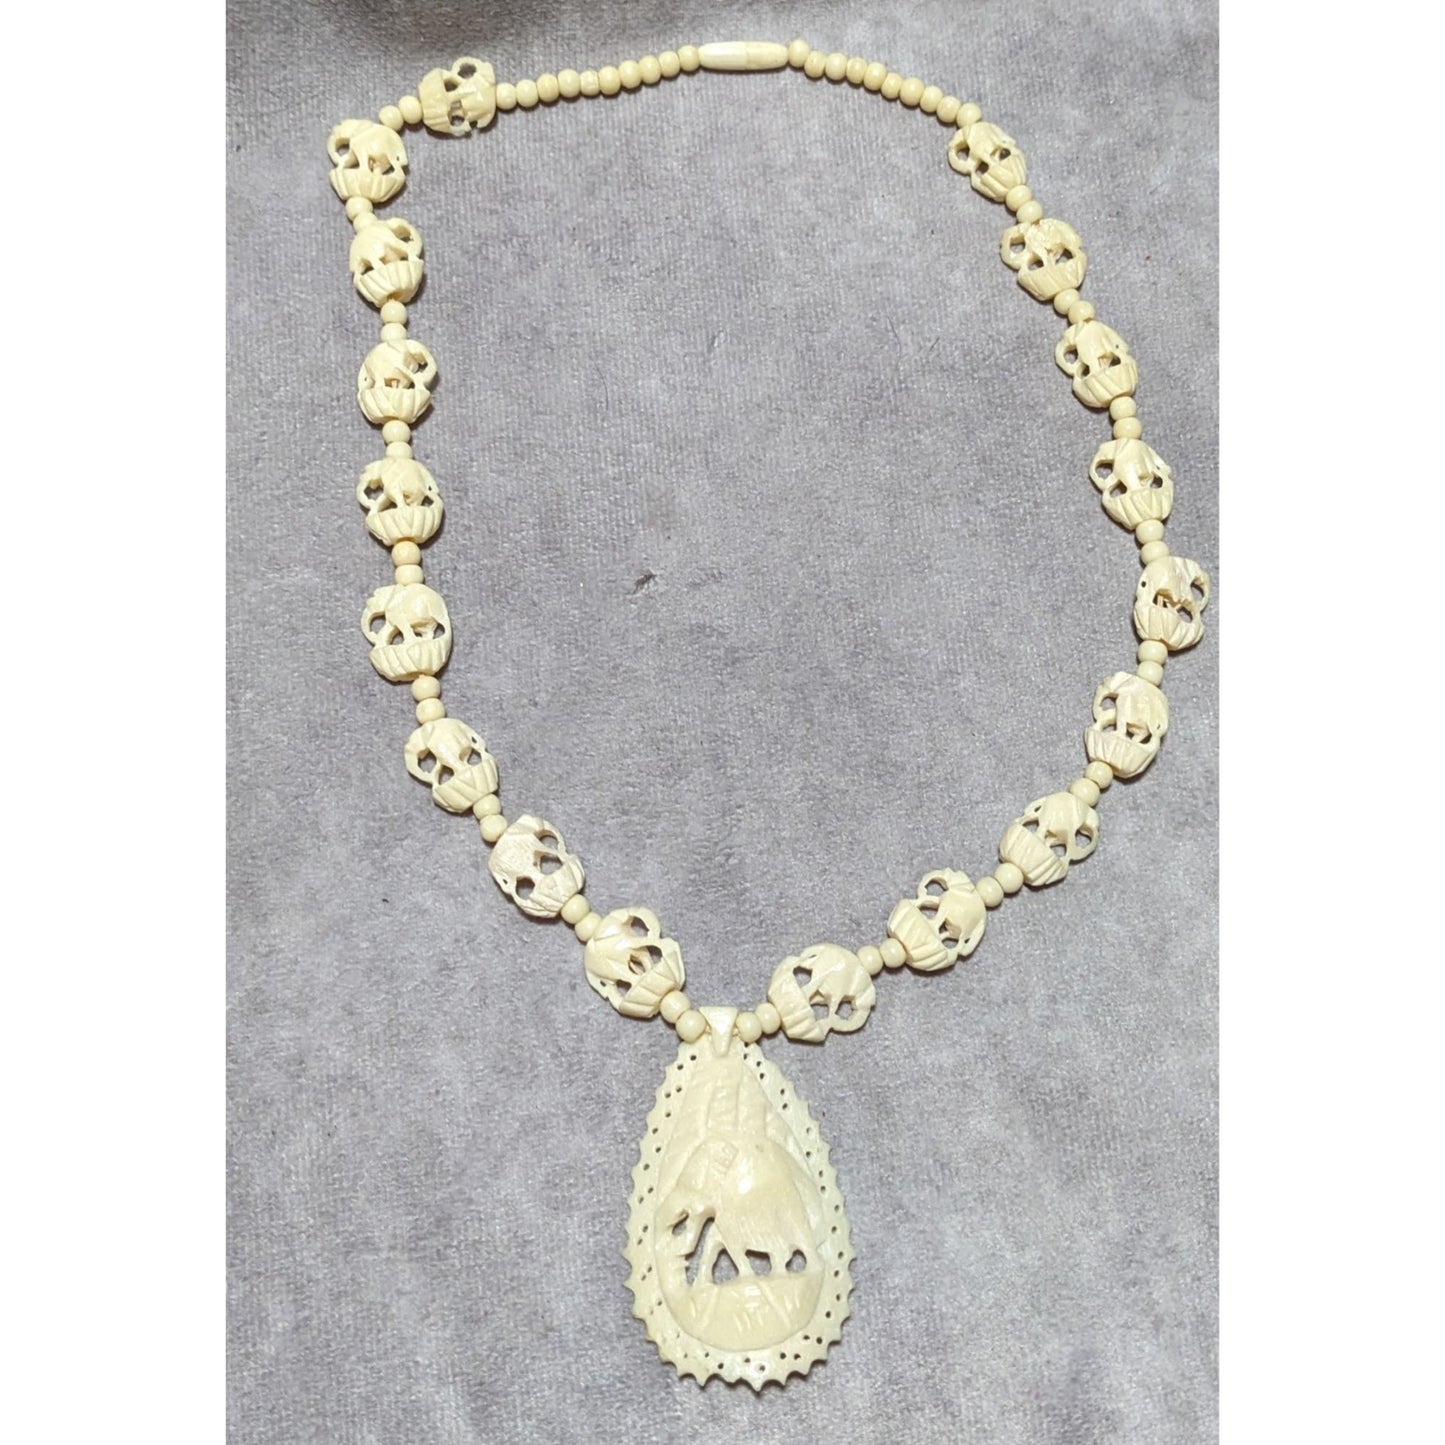 Vintage Bovine Bone Carved Elephant Necklace